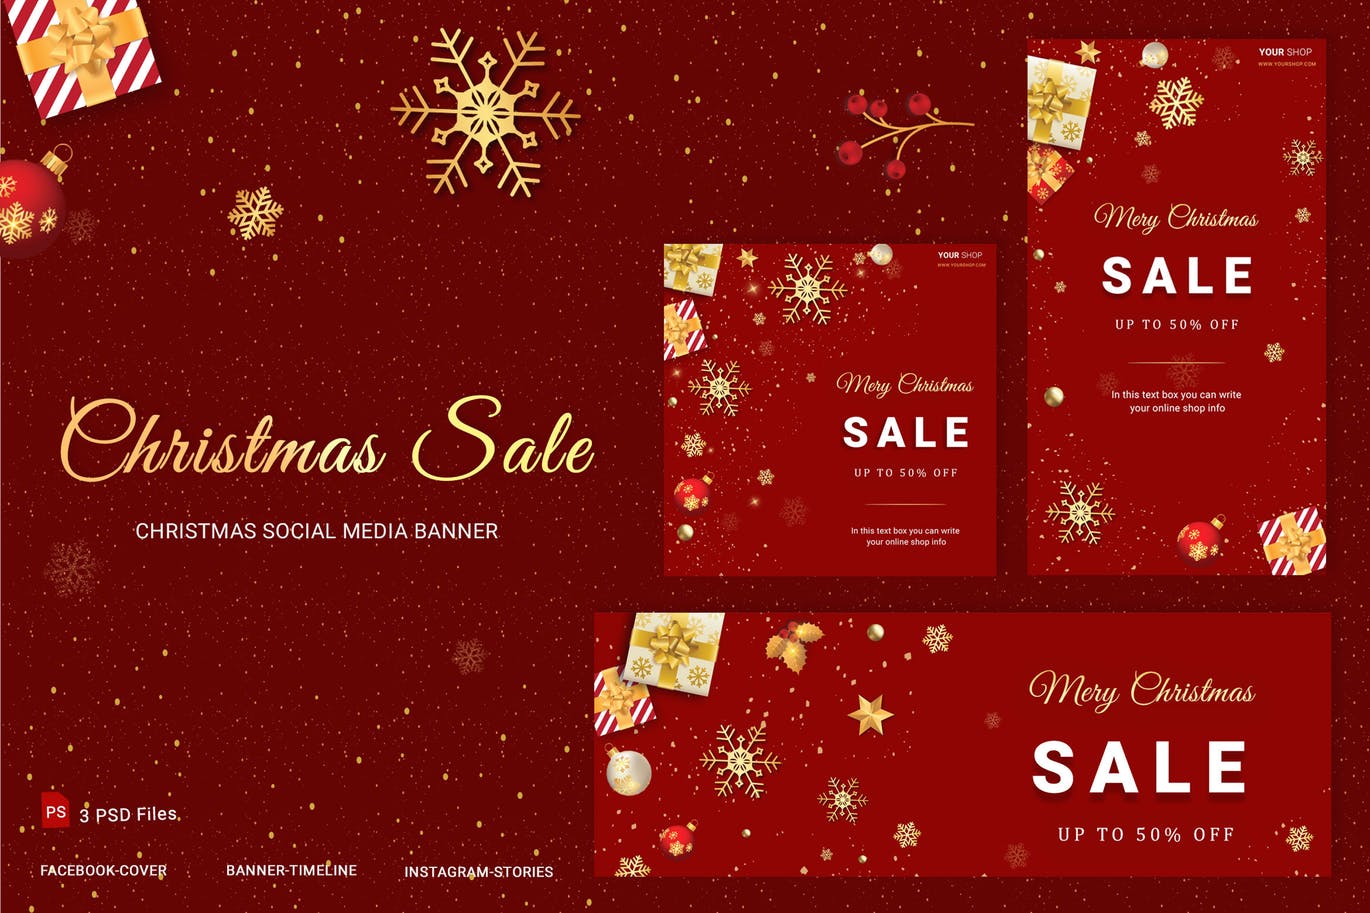 社交媒体自媒体圣诞节主题促销活动Banner设计模板非凡图库精选 Christmas Sale Social Media Banner插图